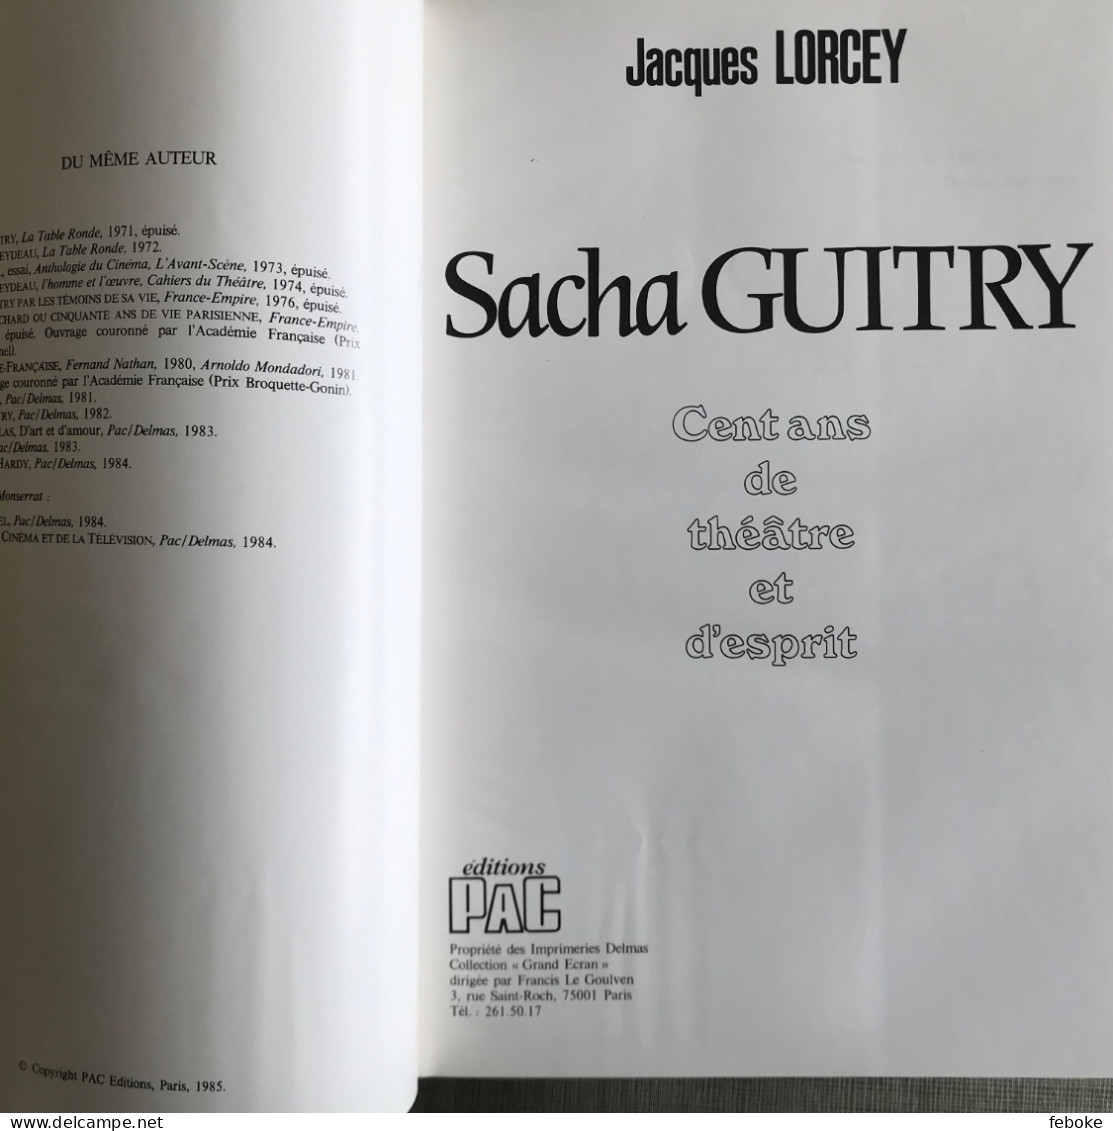 SACHA GUITRY 100 ANS DE THEATRE ET D'ESPRIT DE JACQUES LORCEY PAC EDITIONS PARIS 1985 - Auteurs Français